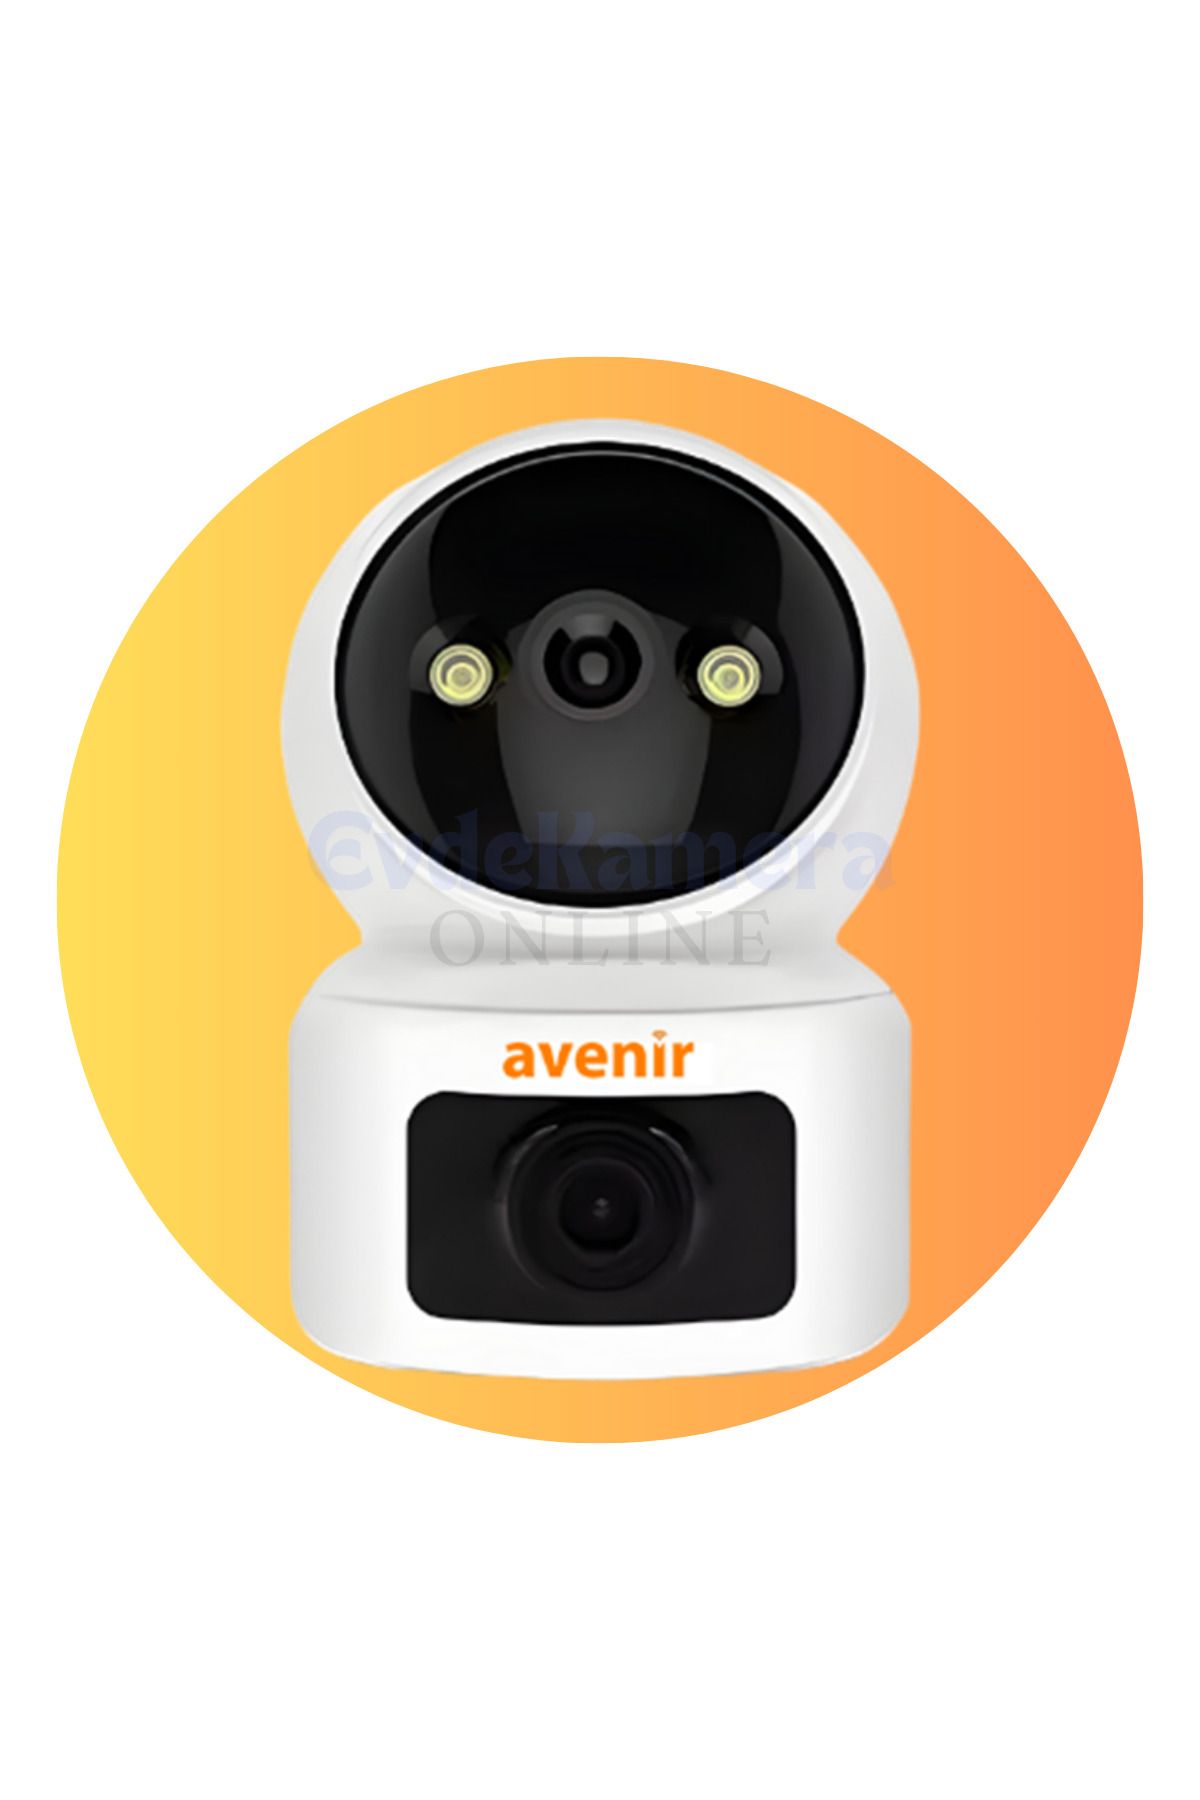 Avenir 2+2mp Çift Lens, 355° Hareketli, Hareket algılama ve Takip özellikli, Kablosuz Akıllı Kamera